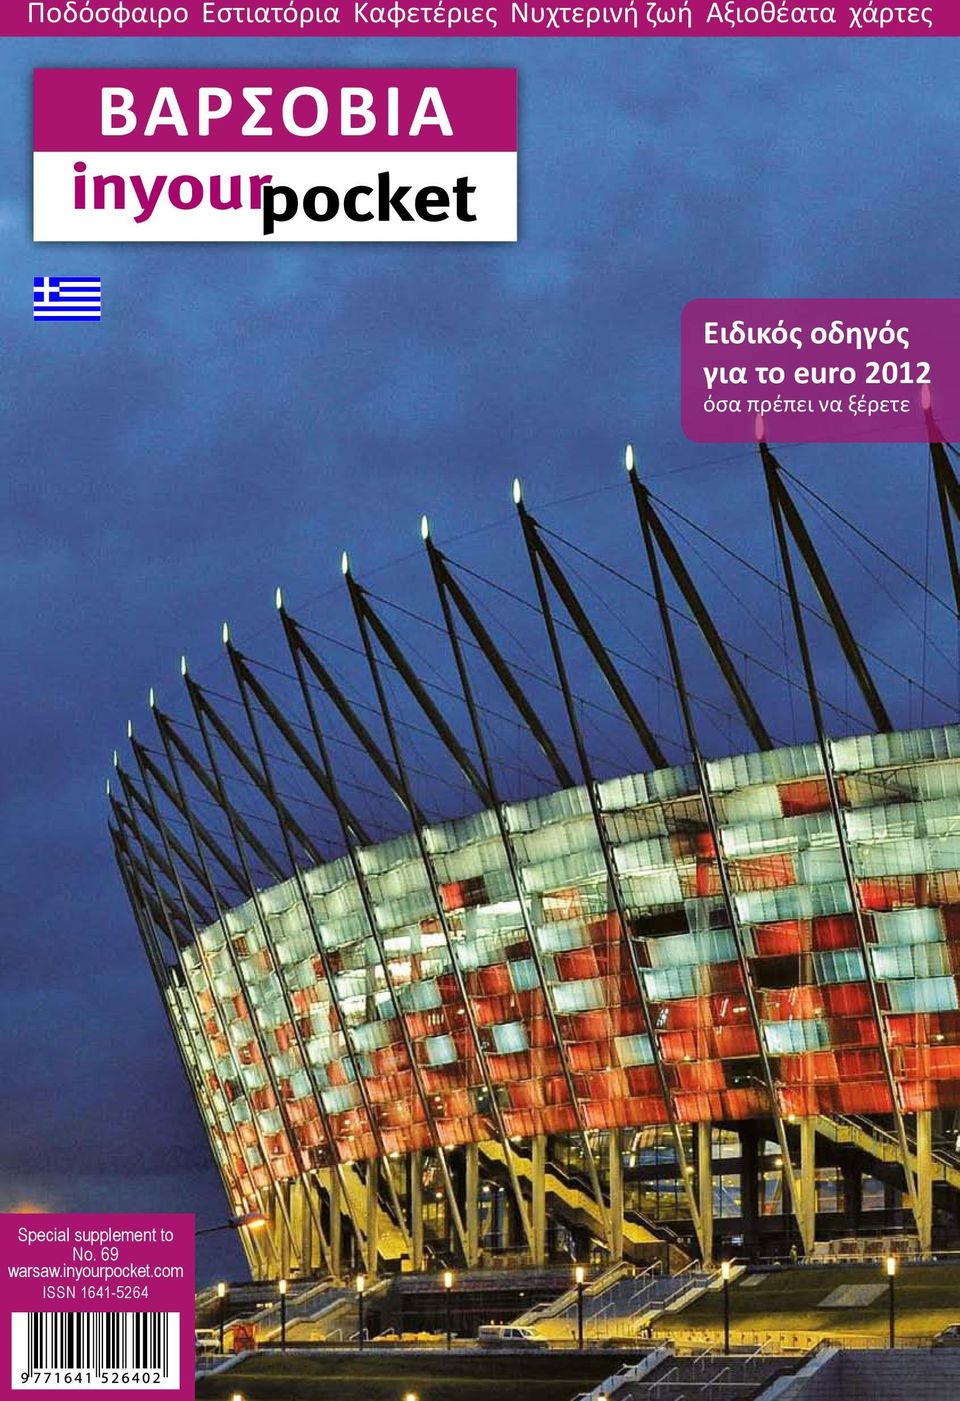 ΒαρσοΒία. Ειδικός οδηγός για το euro 2012 όσα πρέπει να ξέρετε. Ποδόσφαιρο  Εστιατόρια Καφετέριες Νυχτερινή ζωή Αξιοθέατα χάρτες - PDF Free Download